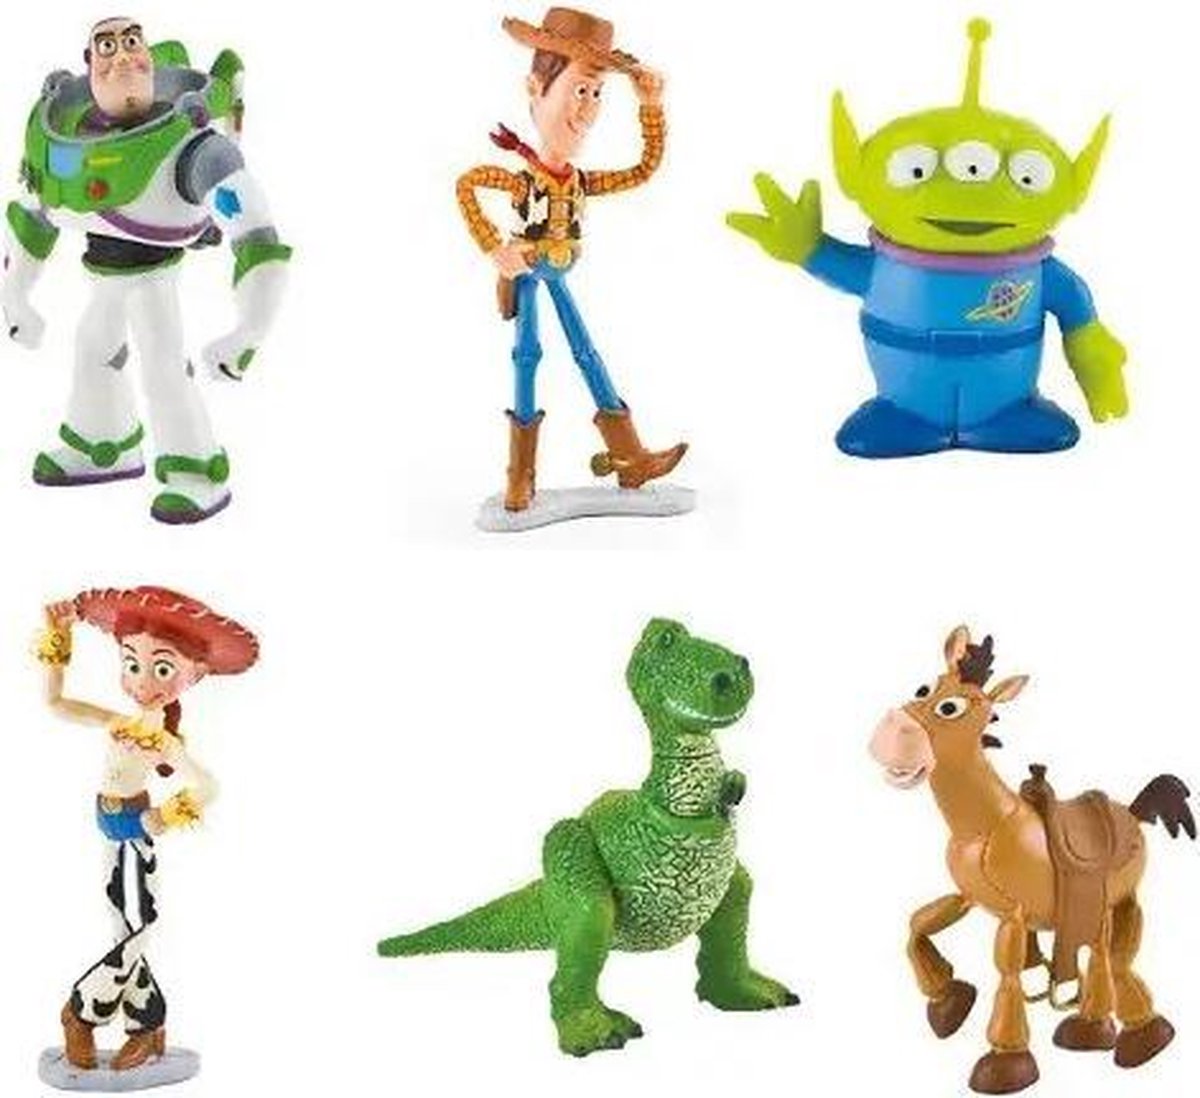 Speelset Toy Story Disney met figuurtjes met o.a. Lightyear  (5-8 cm)